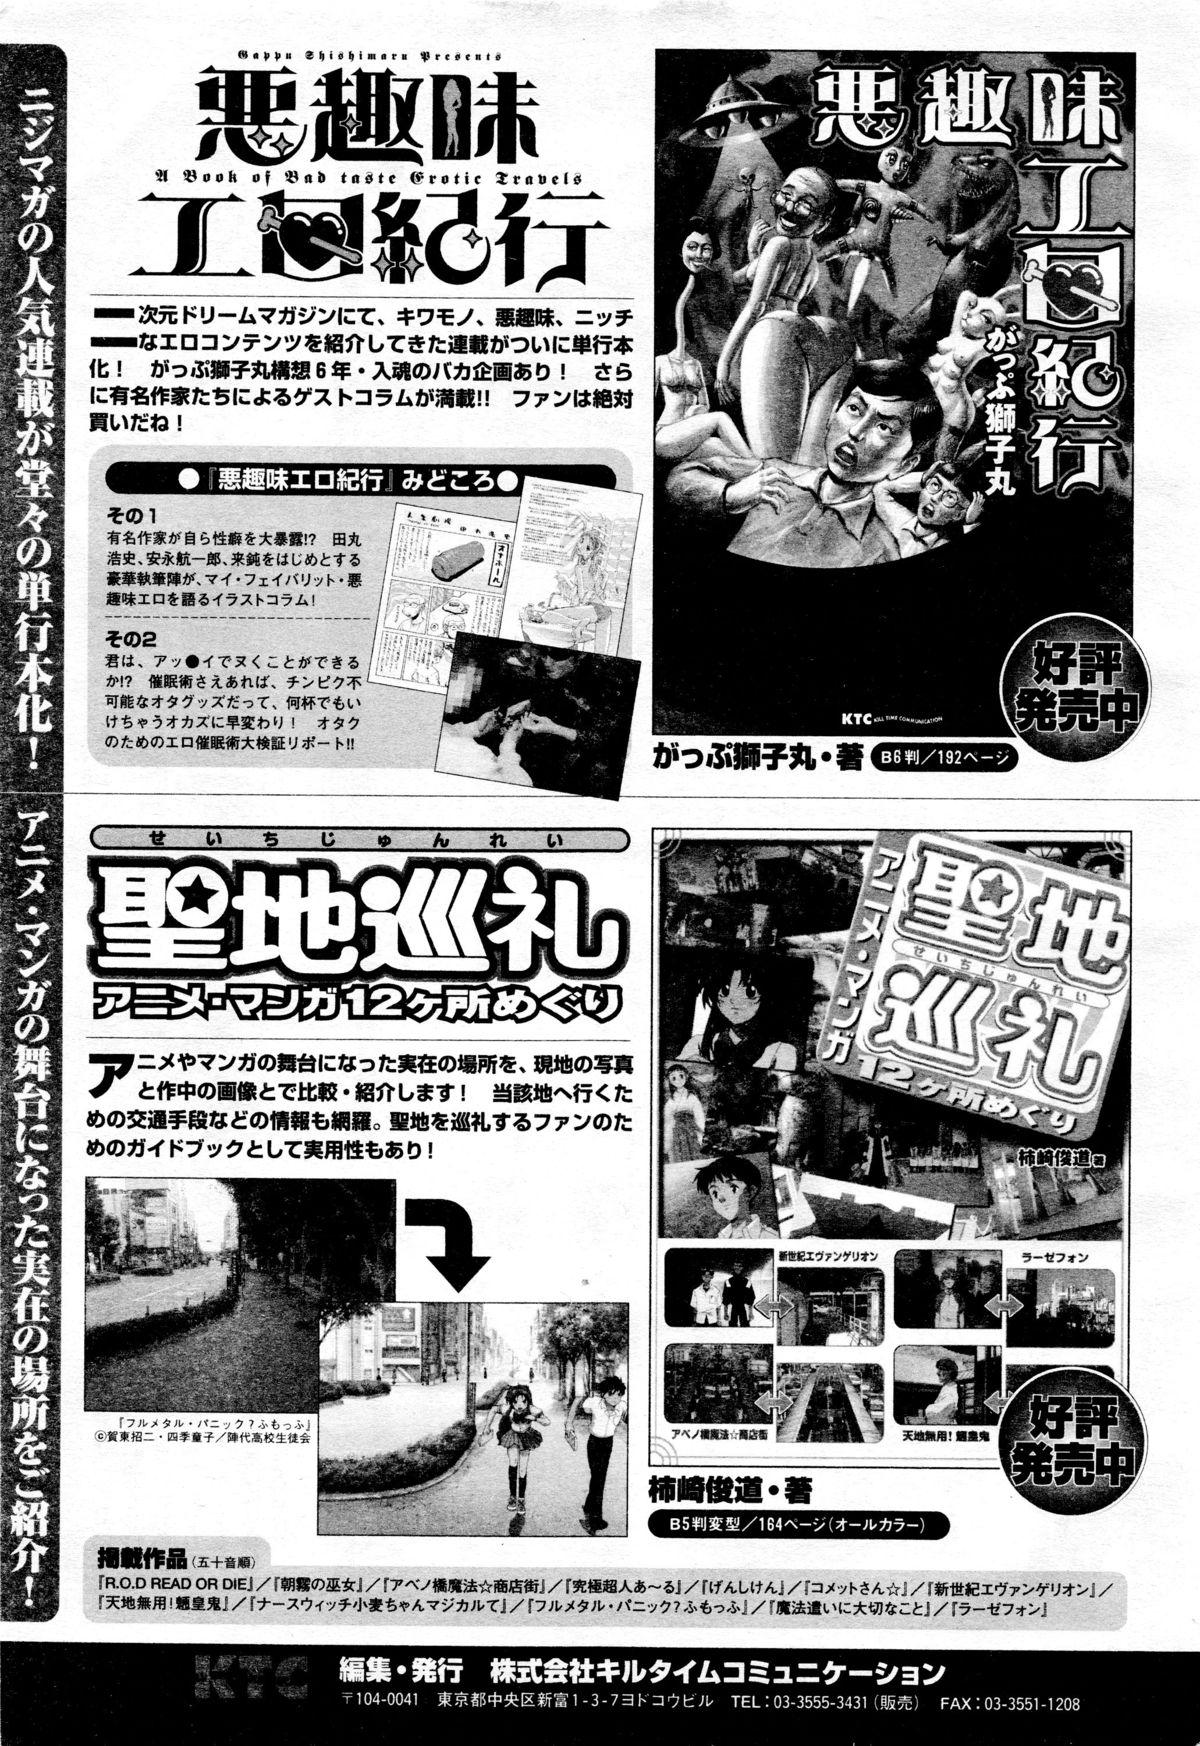 COMIC二次元ドリーム 2005年10月号 Vol.1